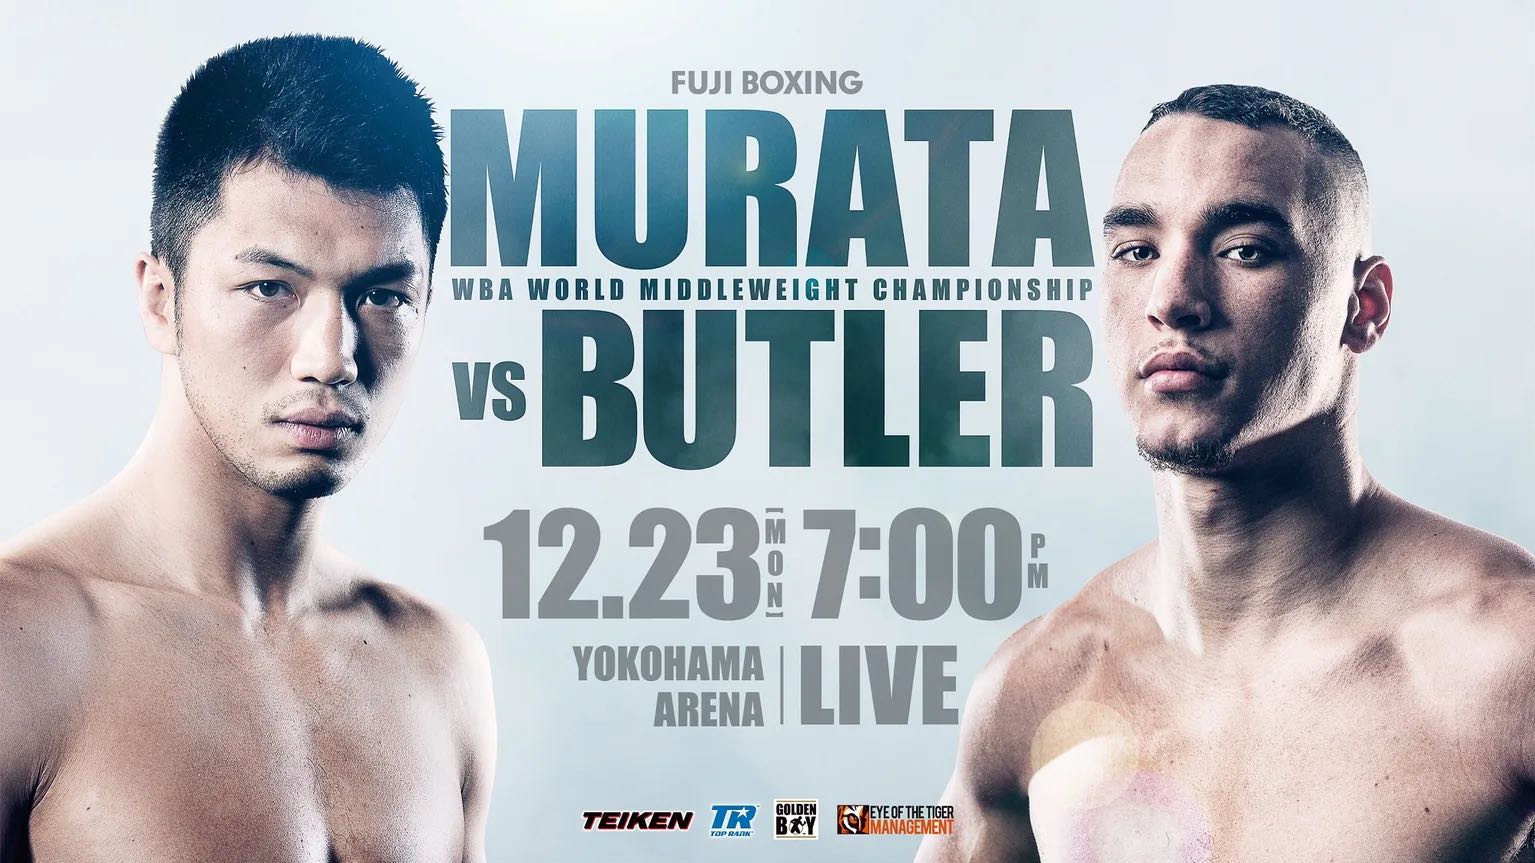 村田諒太 vs スティーブン・バトラー』TKO初防衛で2020は夢のビッグ